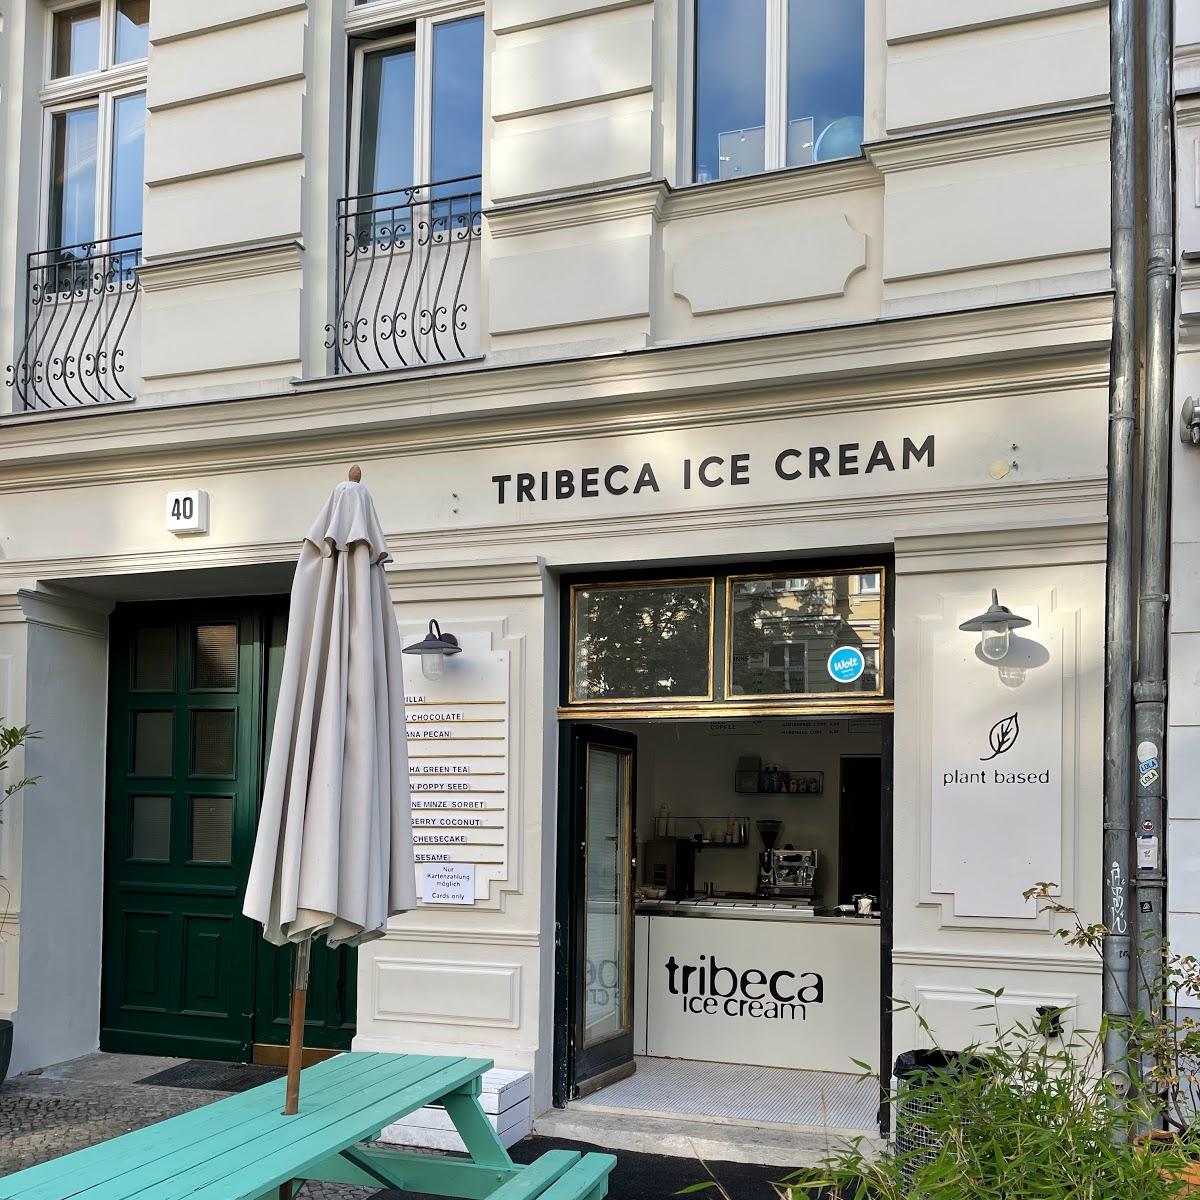 Restaurant "Tribeca Ice Cream Prenzlauer Berg" in Berlin